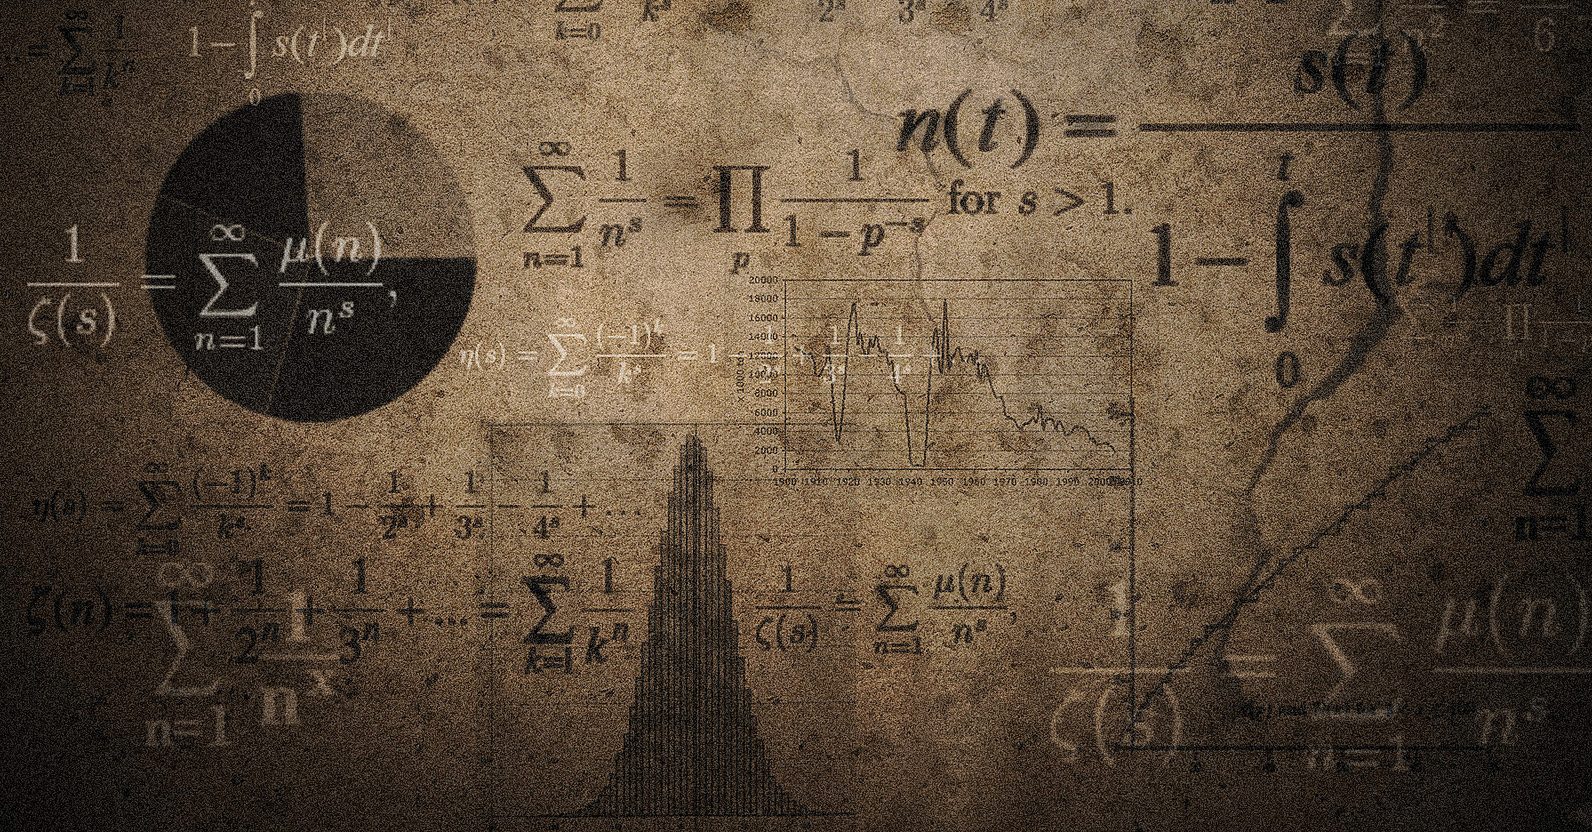 Mathematik gehört für viele Menschen nicht zur Allgemeinbildung - dabei benötigt man sie täglich. Illustration: Tom Brown / flickr (CC BY 2.0)